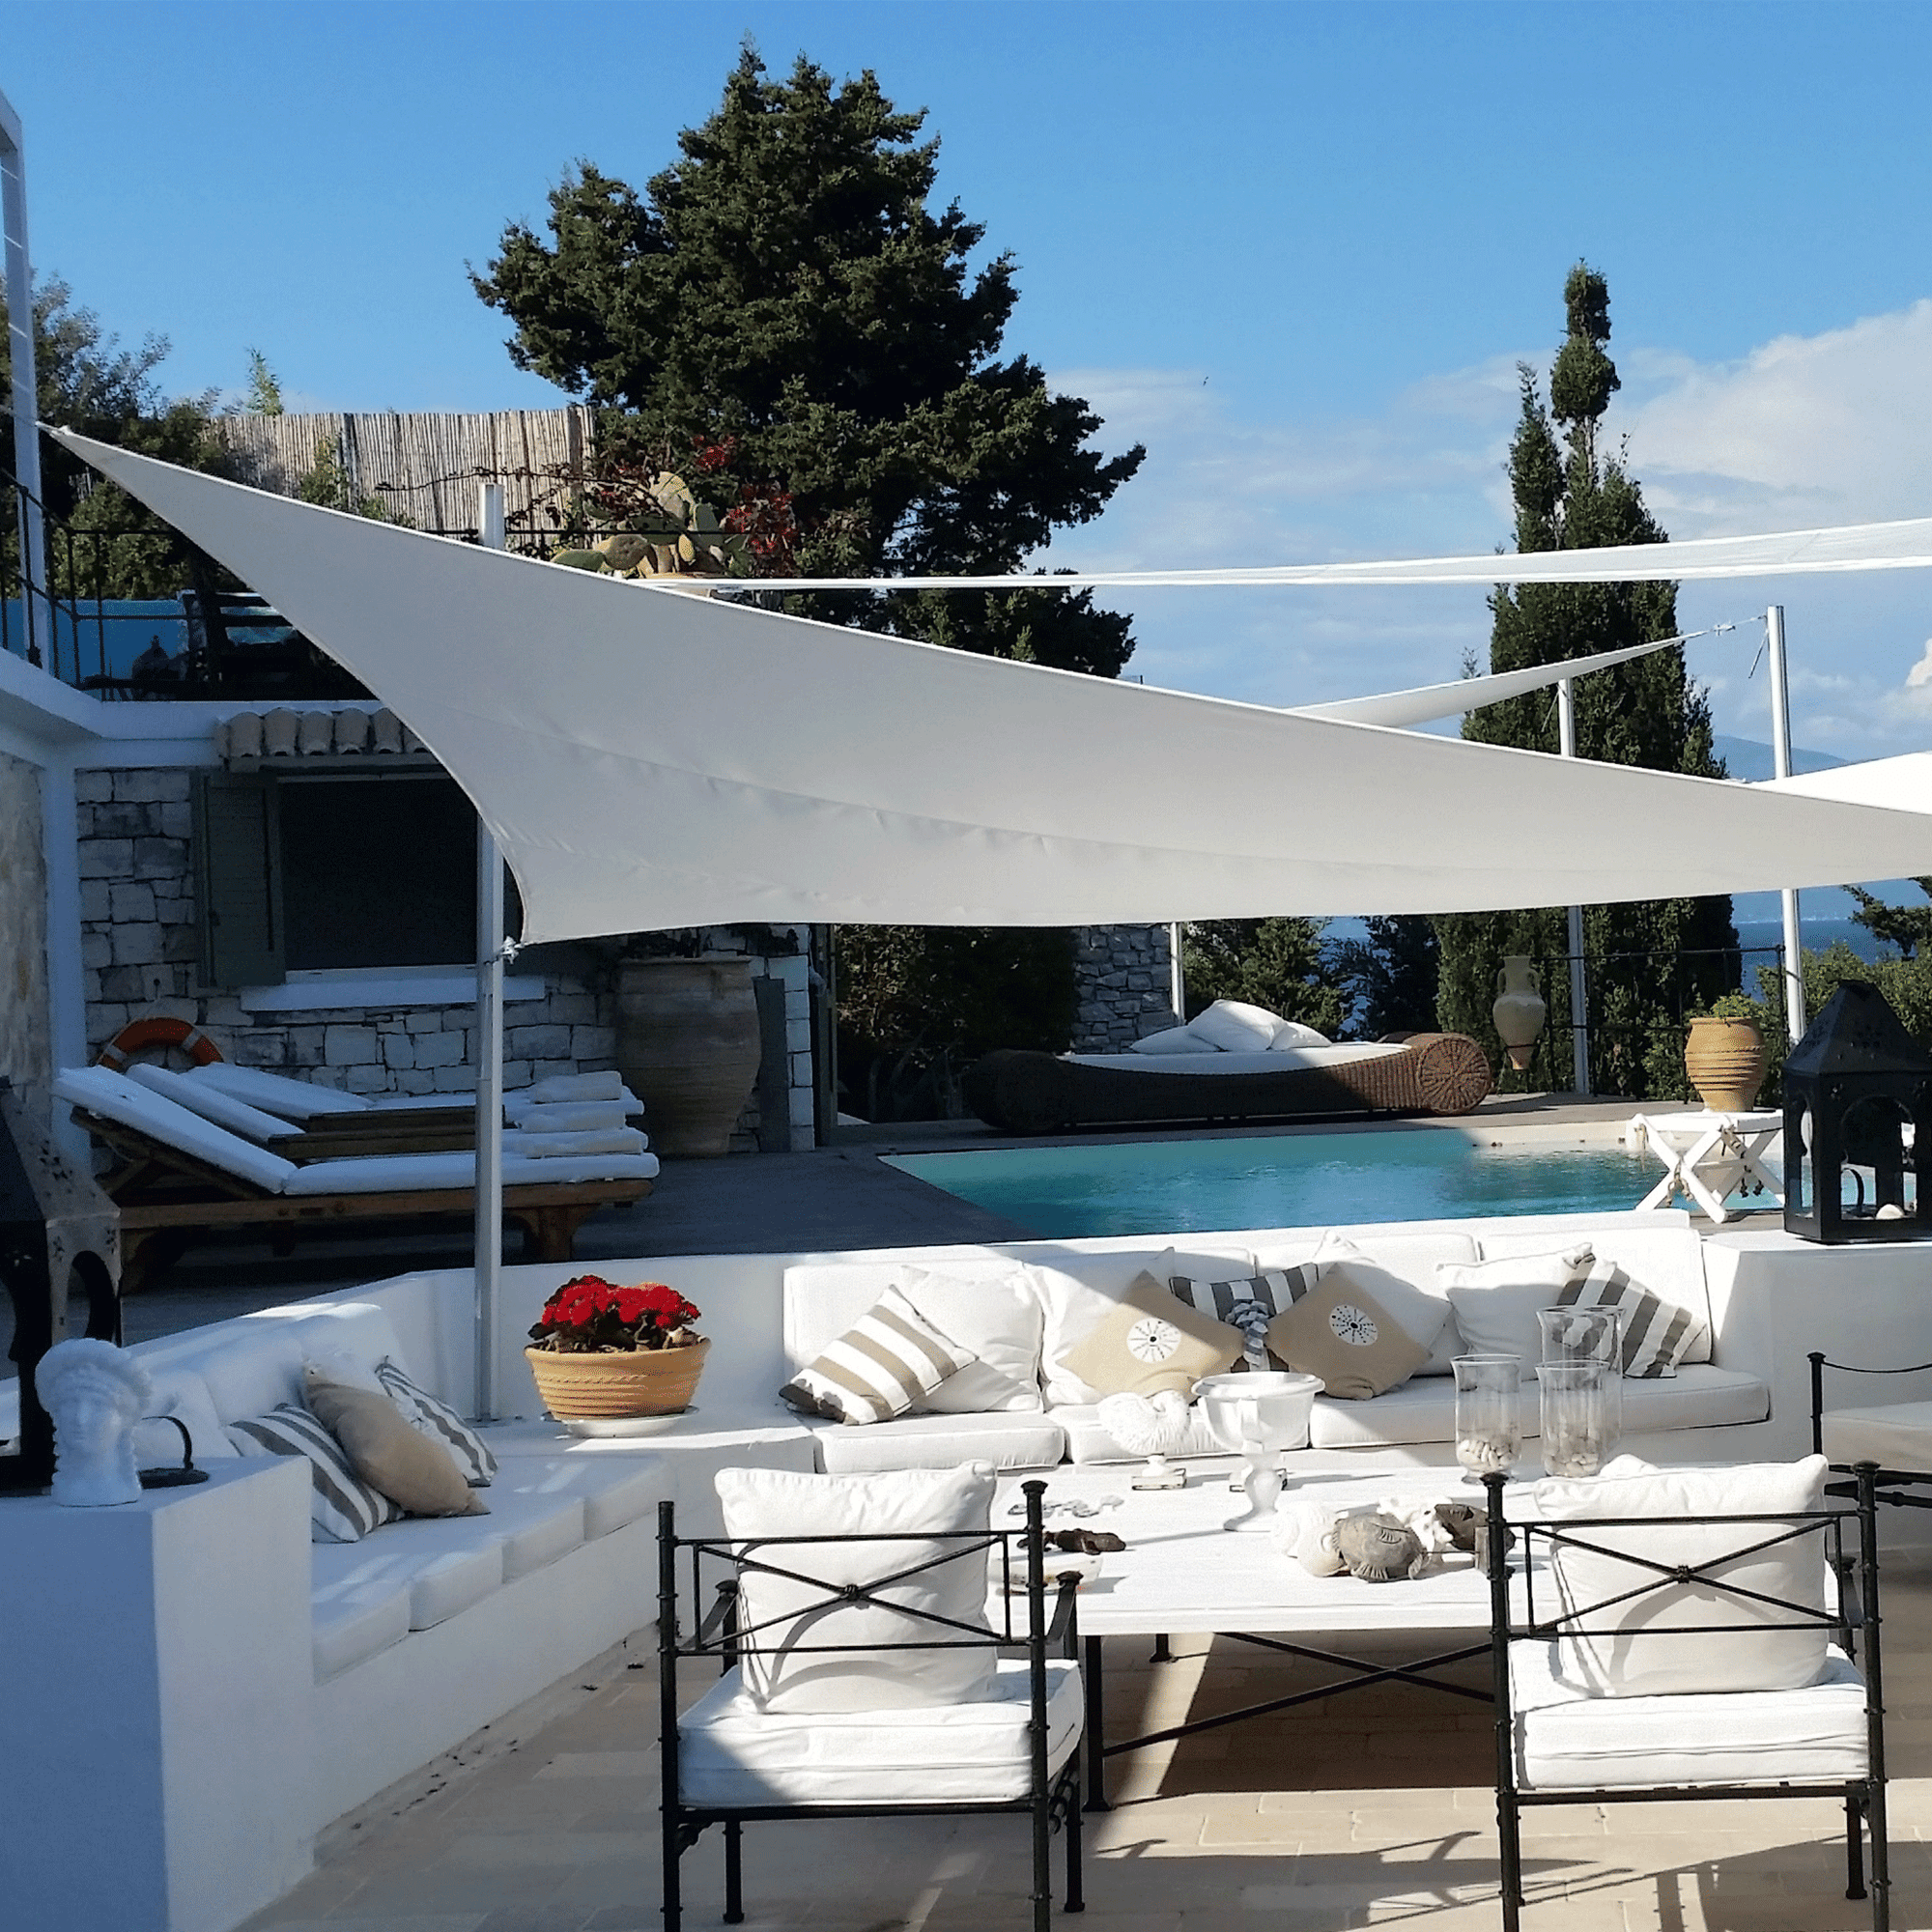 Umbrosa Sonnesegel in weiß 4x4x4m. Das Segel dient zur Beschattung einer Lounge aus Gusseisen.